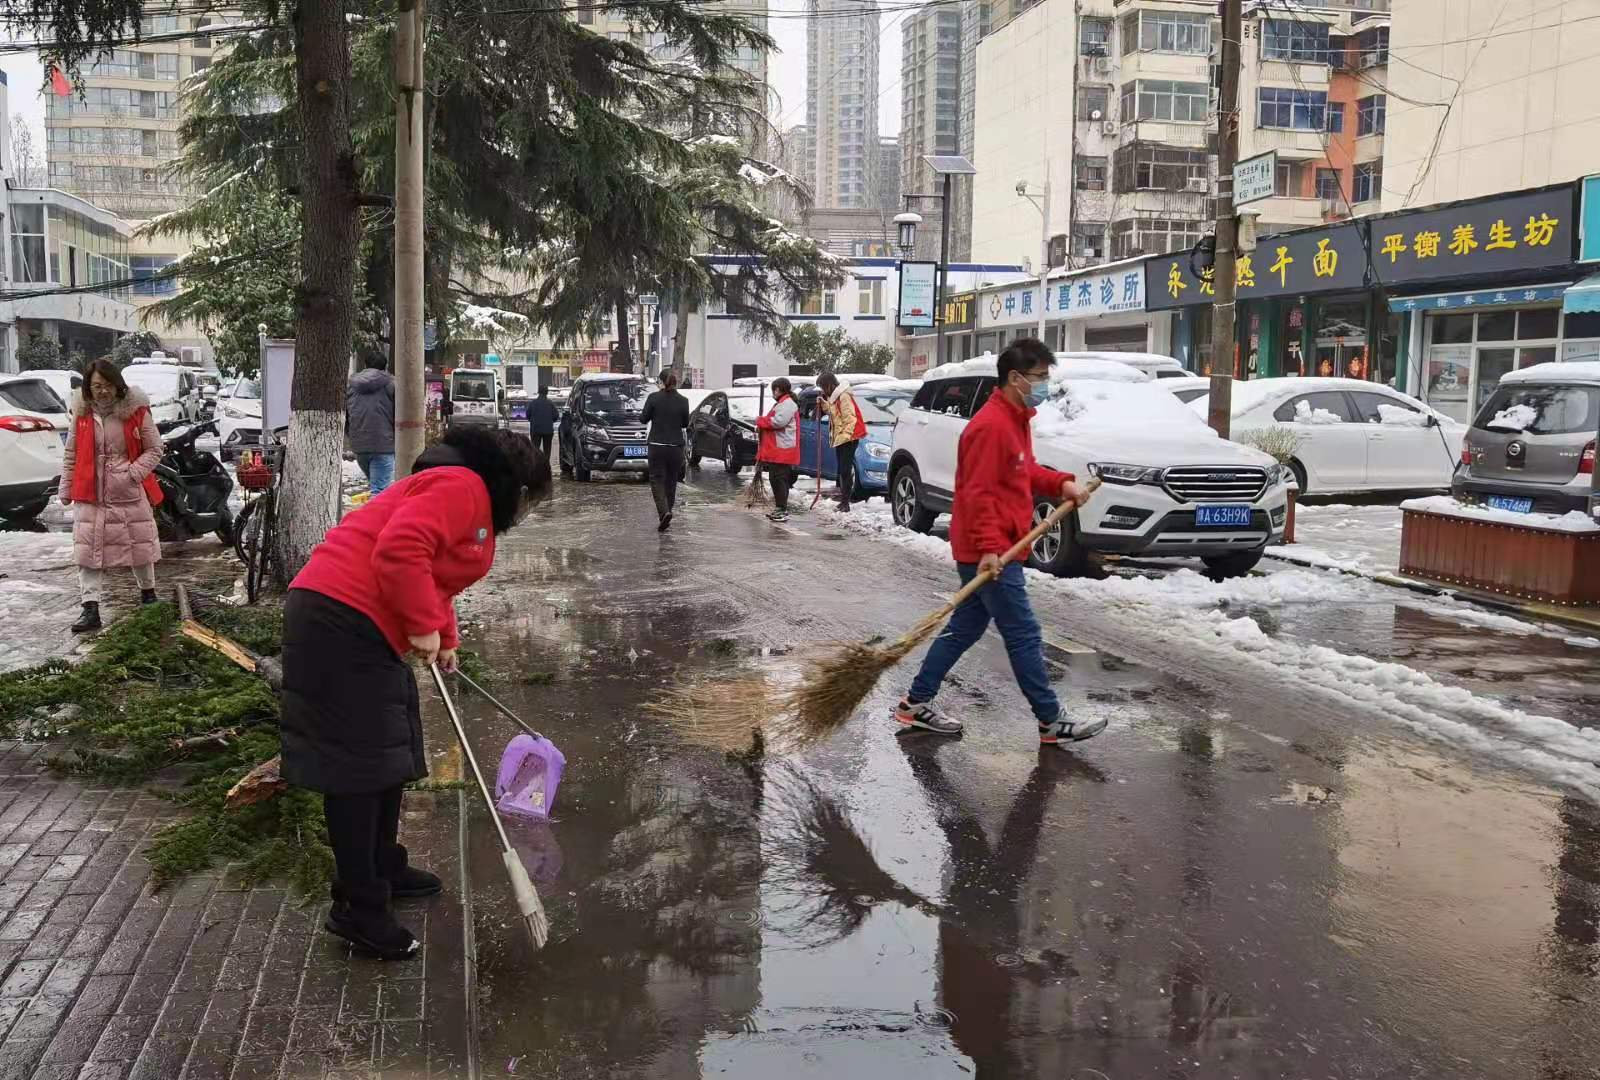 社工、志愿者一起清扫积雪